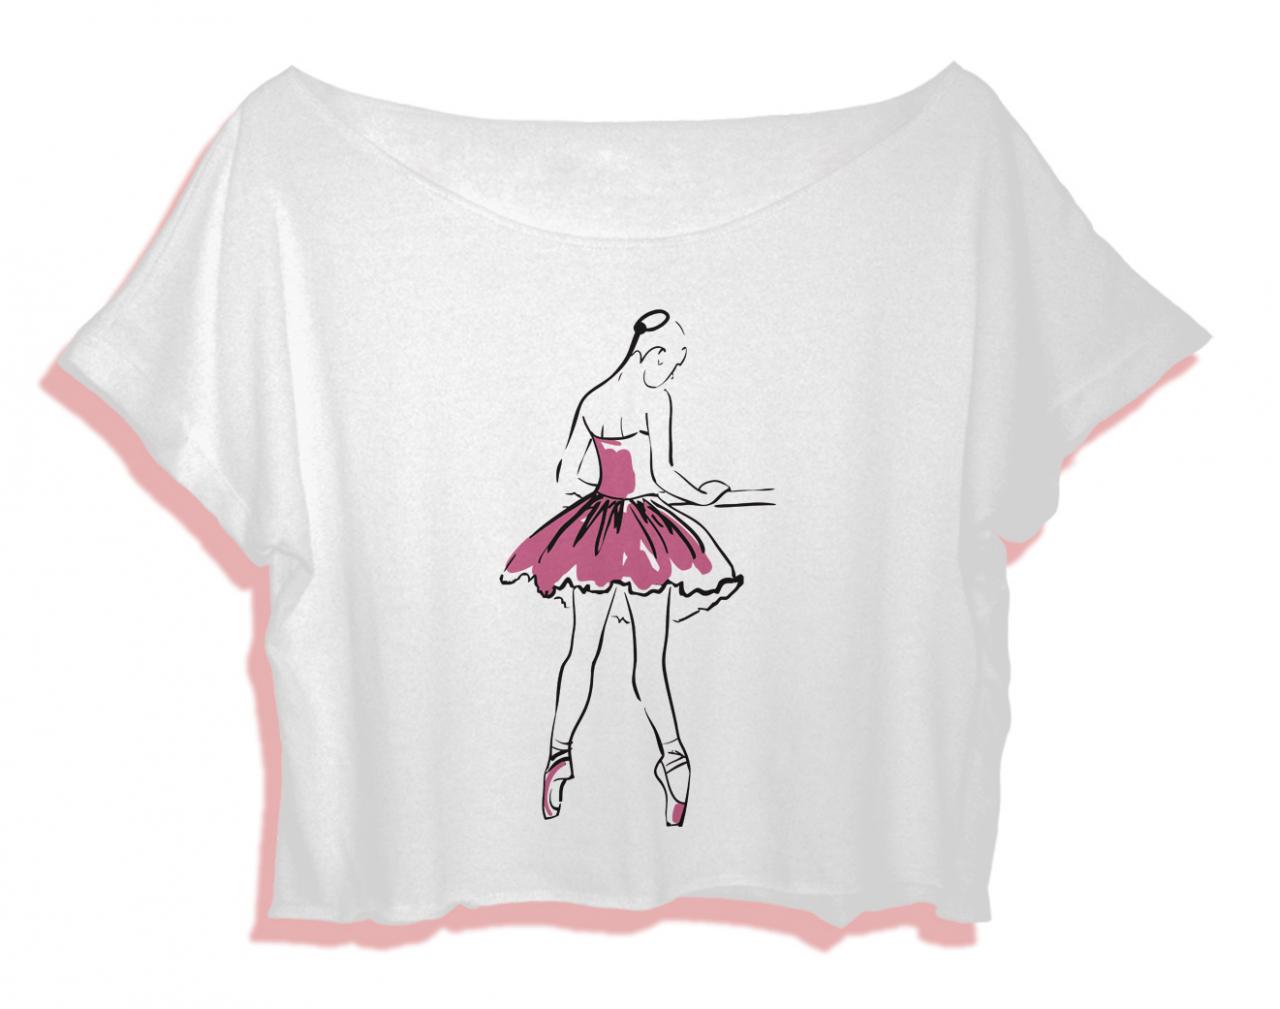 Ballerina Shirt Women Crop Top Women Ballet Crop Tee Ballerina T-shirt All Size Black White Pinterest Tumblr